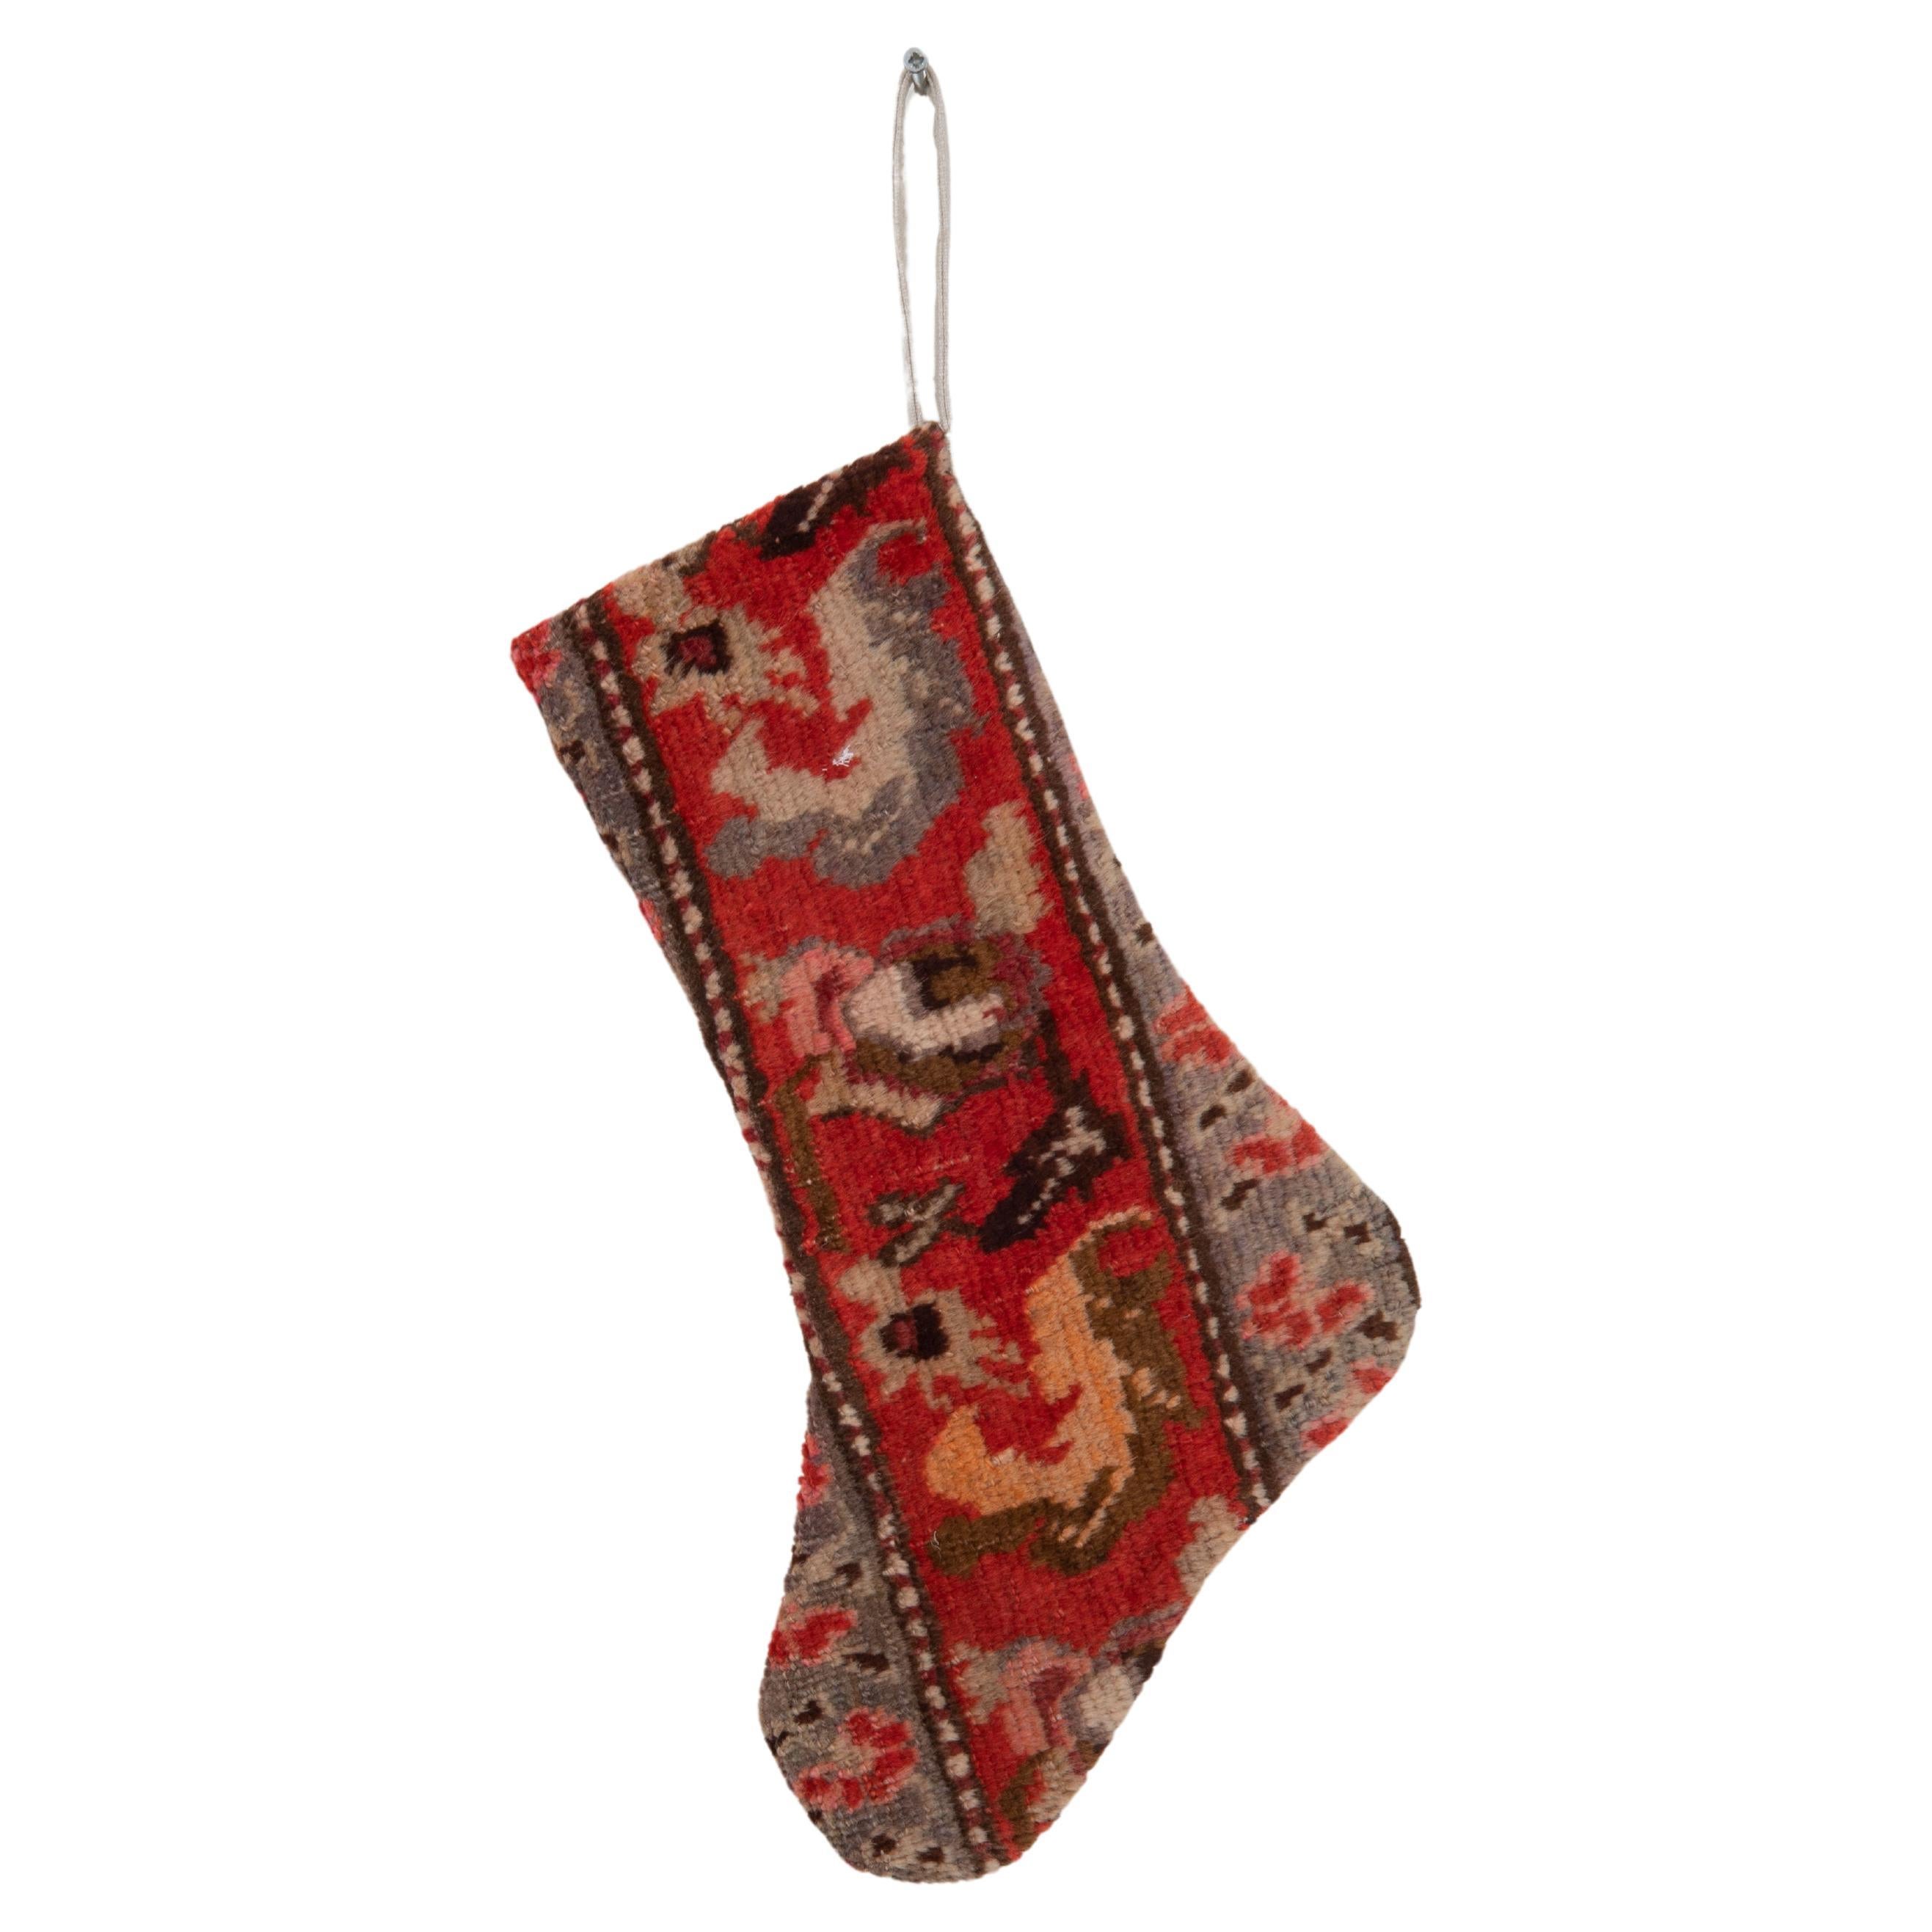 Weihnachts Stocking aus kaukasischen Teppichfragmenten